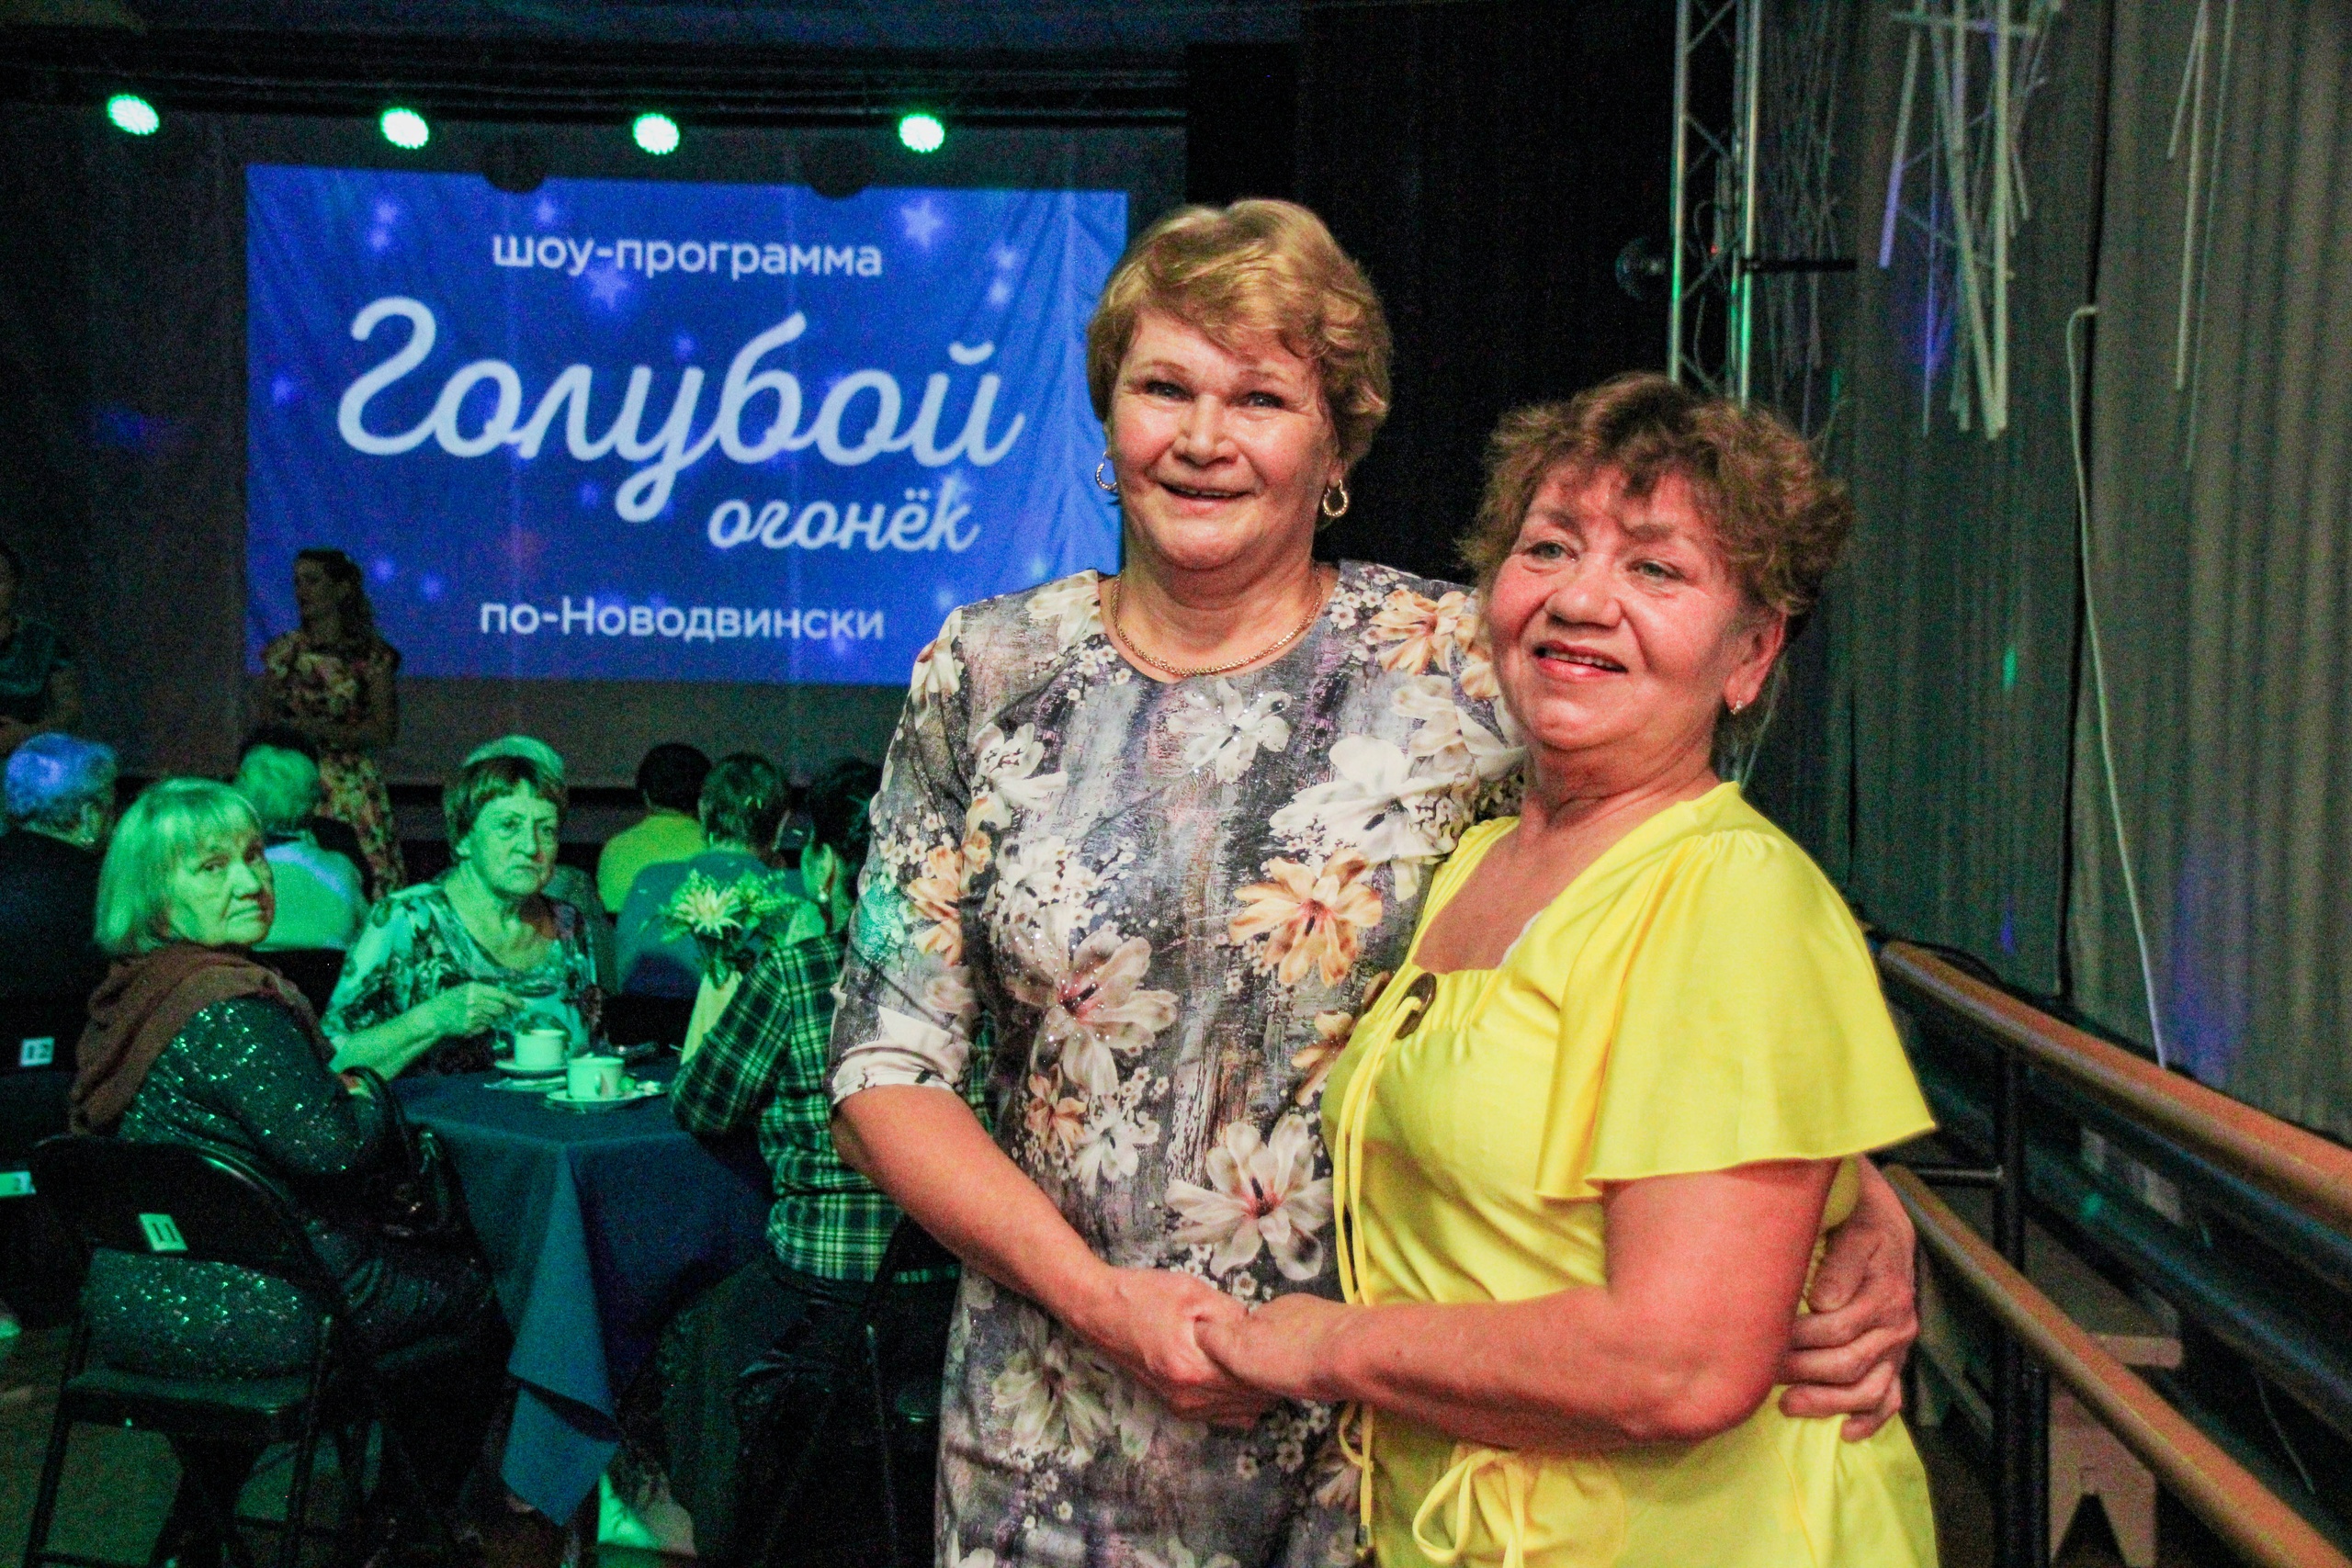 Вчера в стенах Новодвинского городского культурного центра состоялся «Голубой огонёк по-Новодвински»!